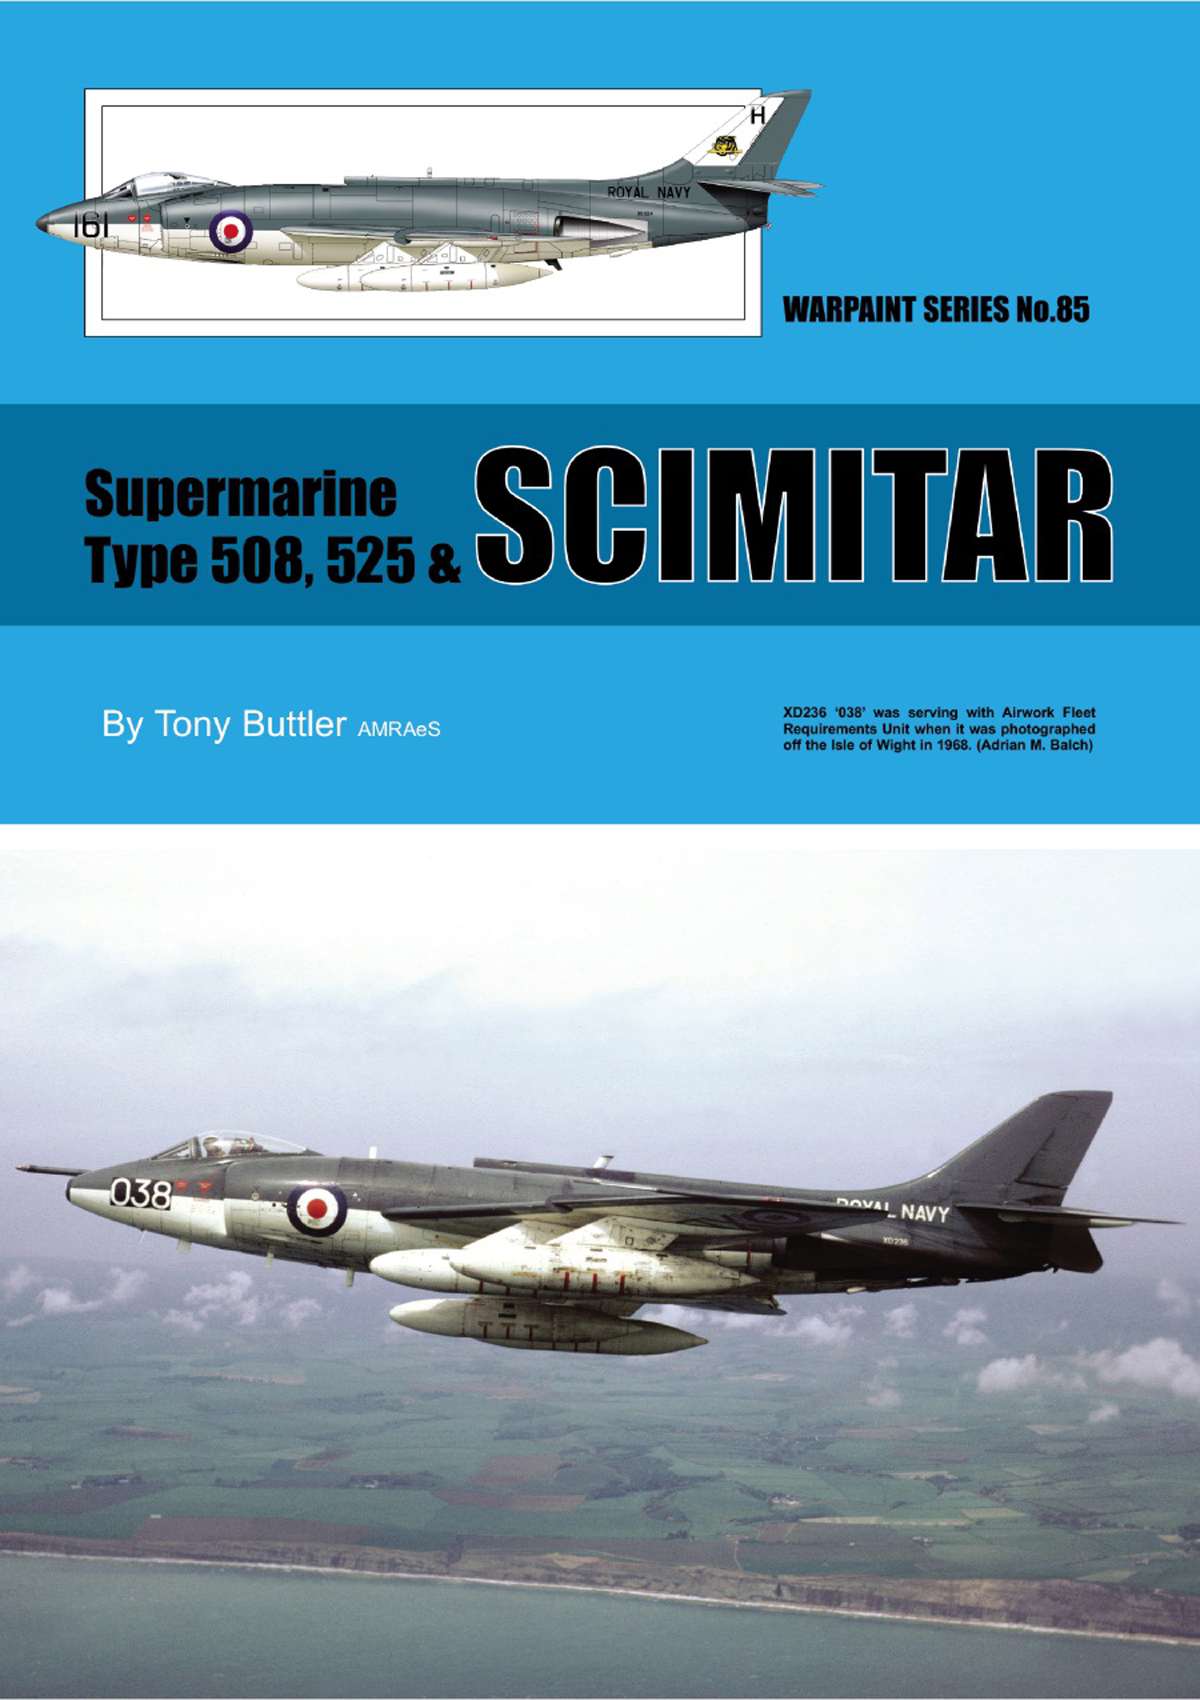 N85 - Supermarine Type 508,525 & Scimitar